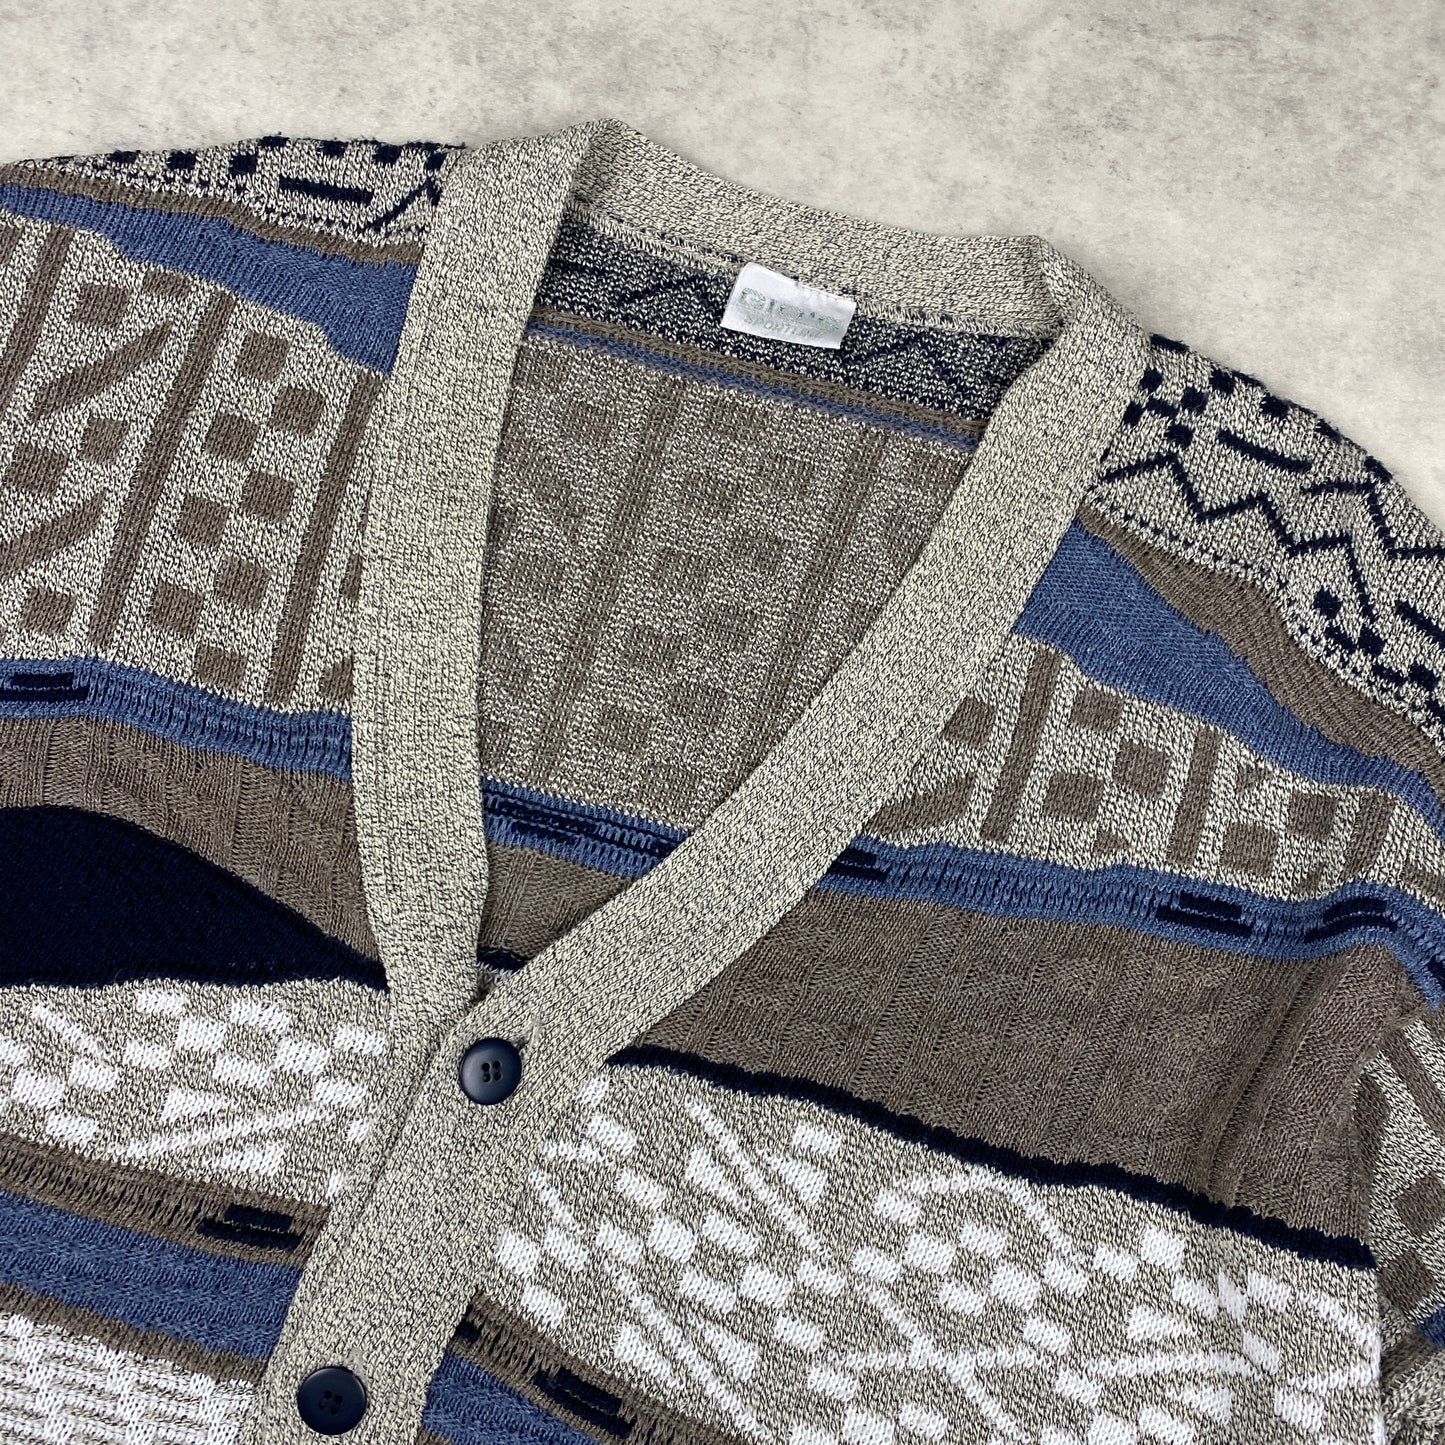 VTG knit heavyweight cardigan sweater (M-L)